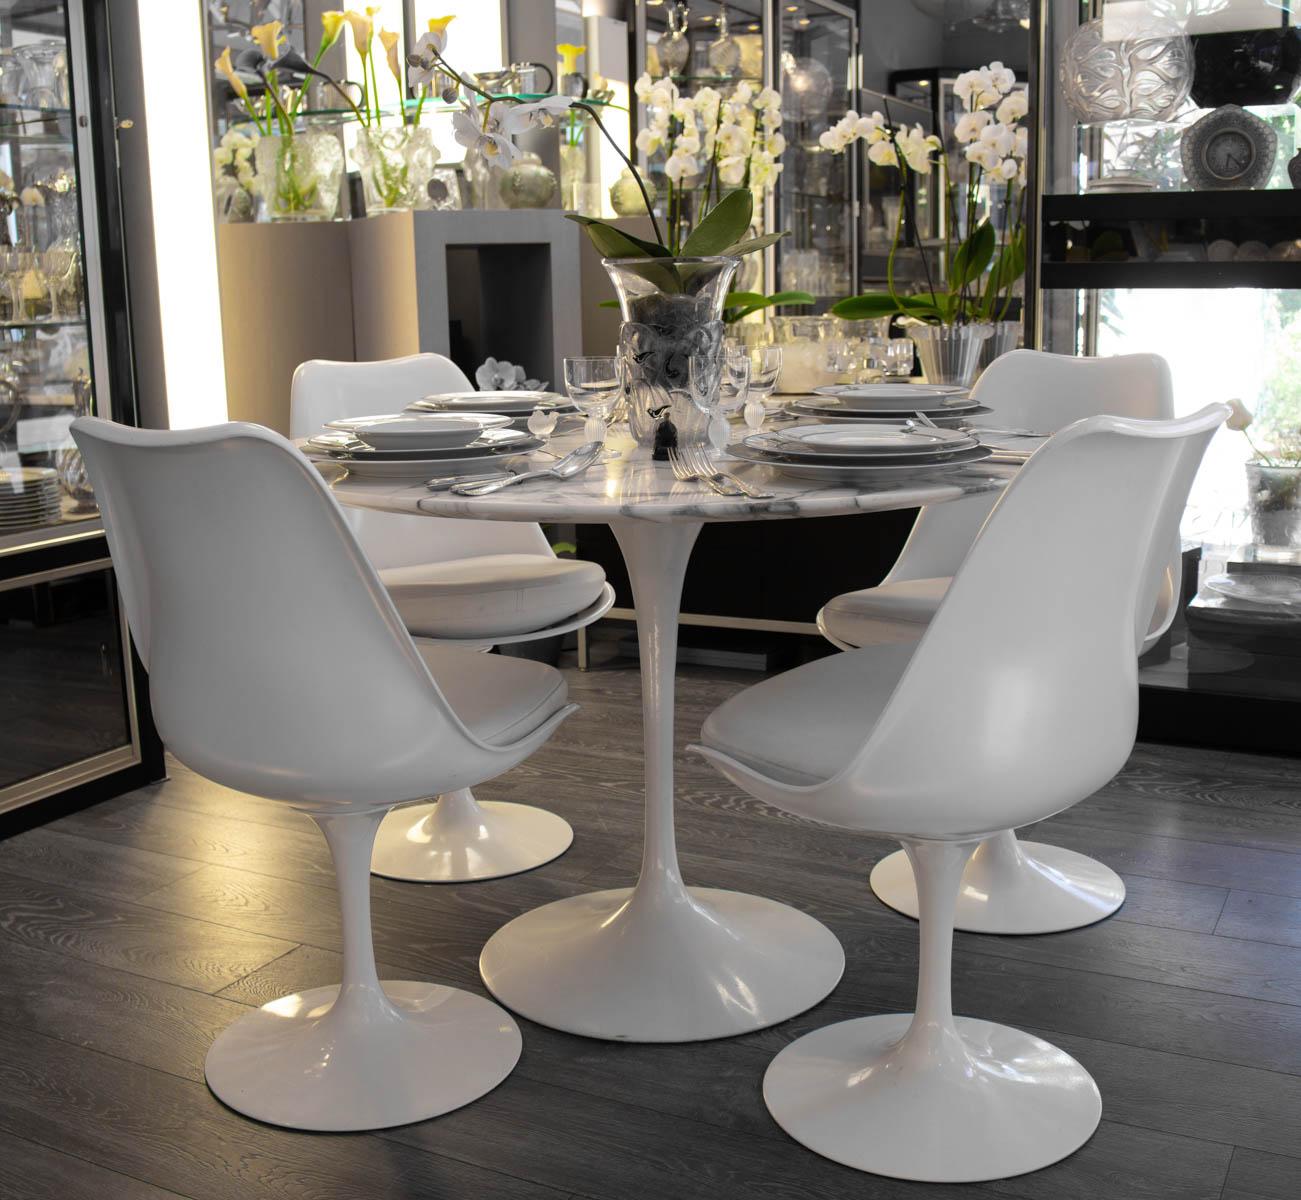 Eero Saarinen (1910-1961) and Knoll International
Suite de 4 chaises modèle Tulipe
Coque en fibre de verre laquée blanc, piètement pivotant en fonte d'aluminium recouvert de Rilsan blanc
Measures: 81 x 51 x 44 cm. The tulip chair was designed by